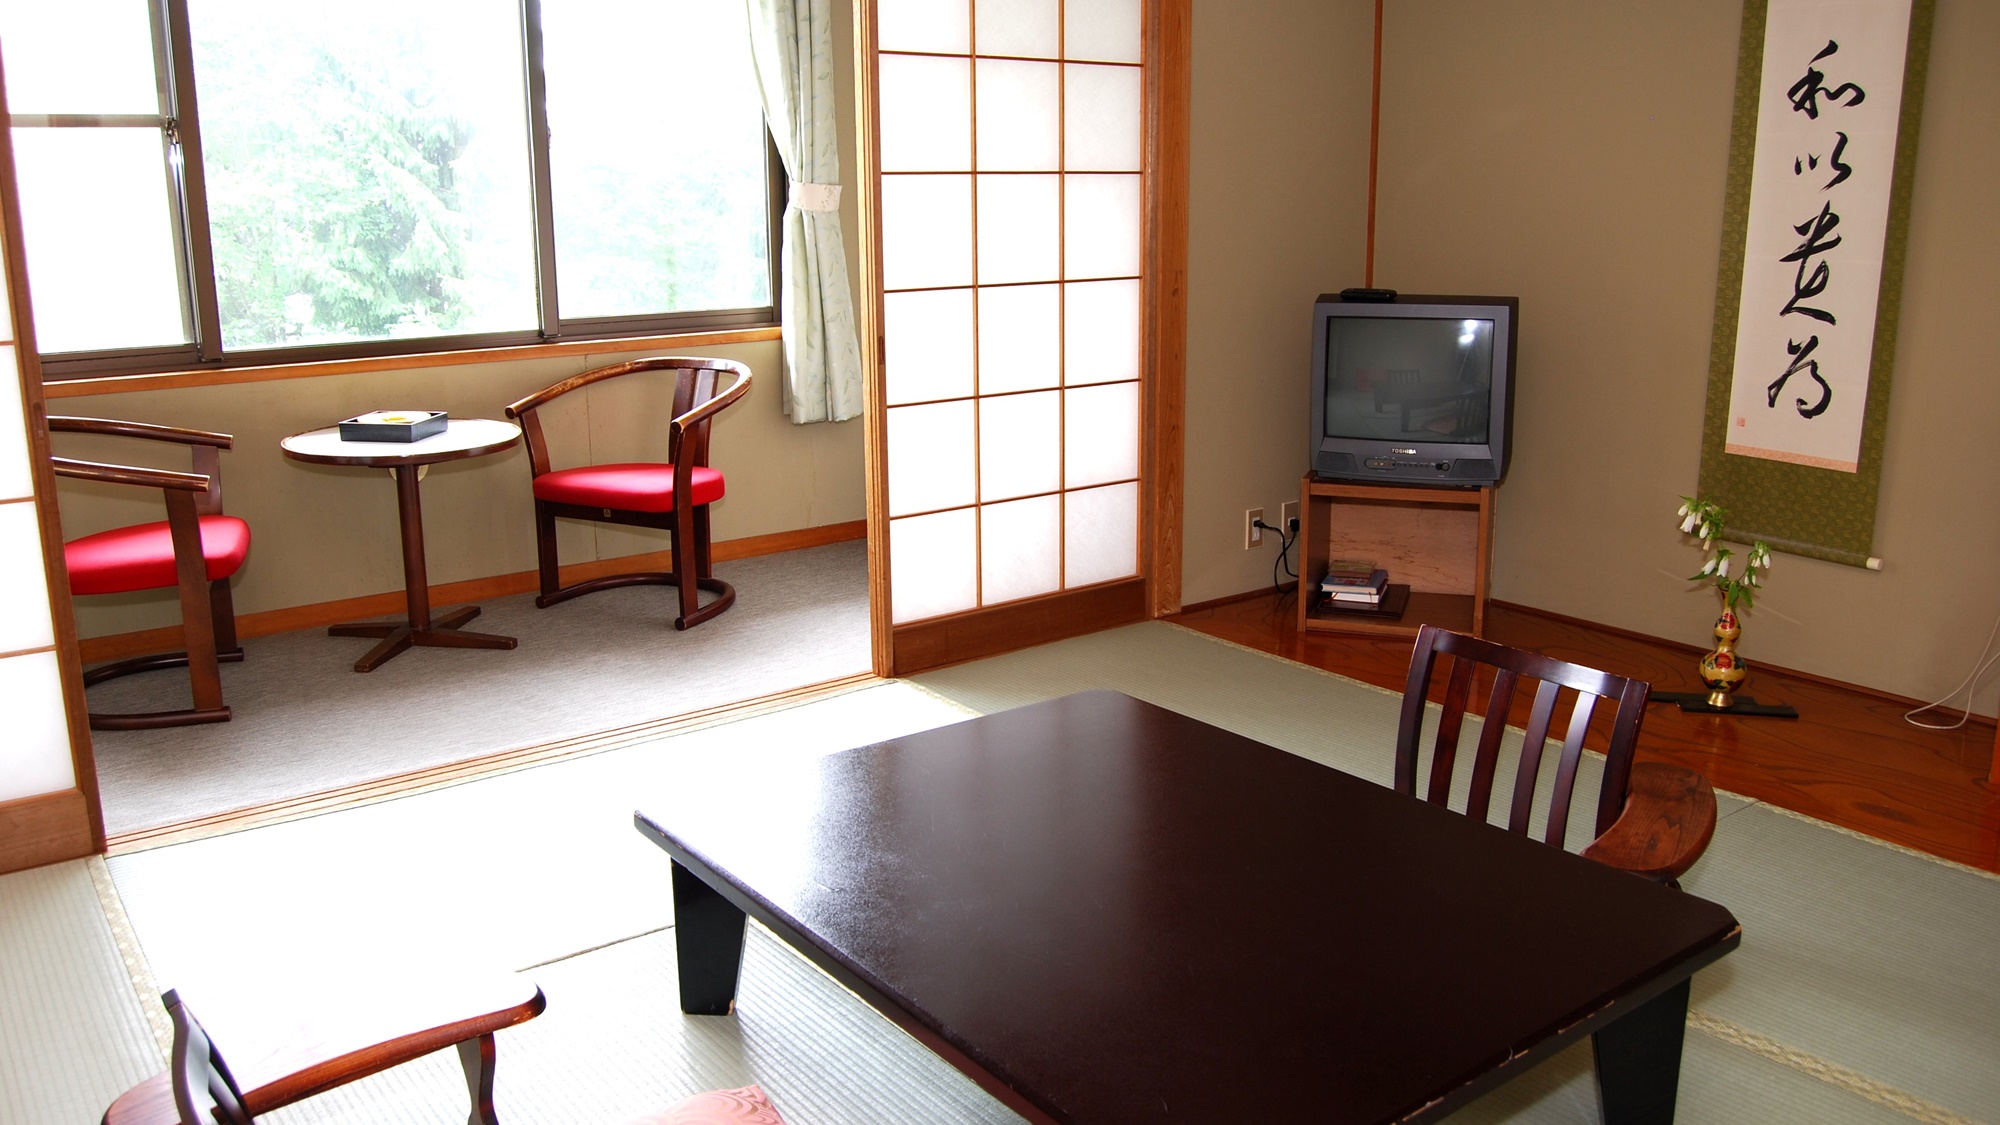 【お部屋一例】尾崎紅葉や与謝野晶子など、明治・昭和の文豪たちが愛し、滞在したという歴史ある旅館。